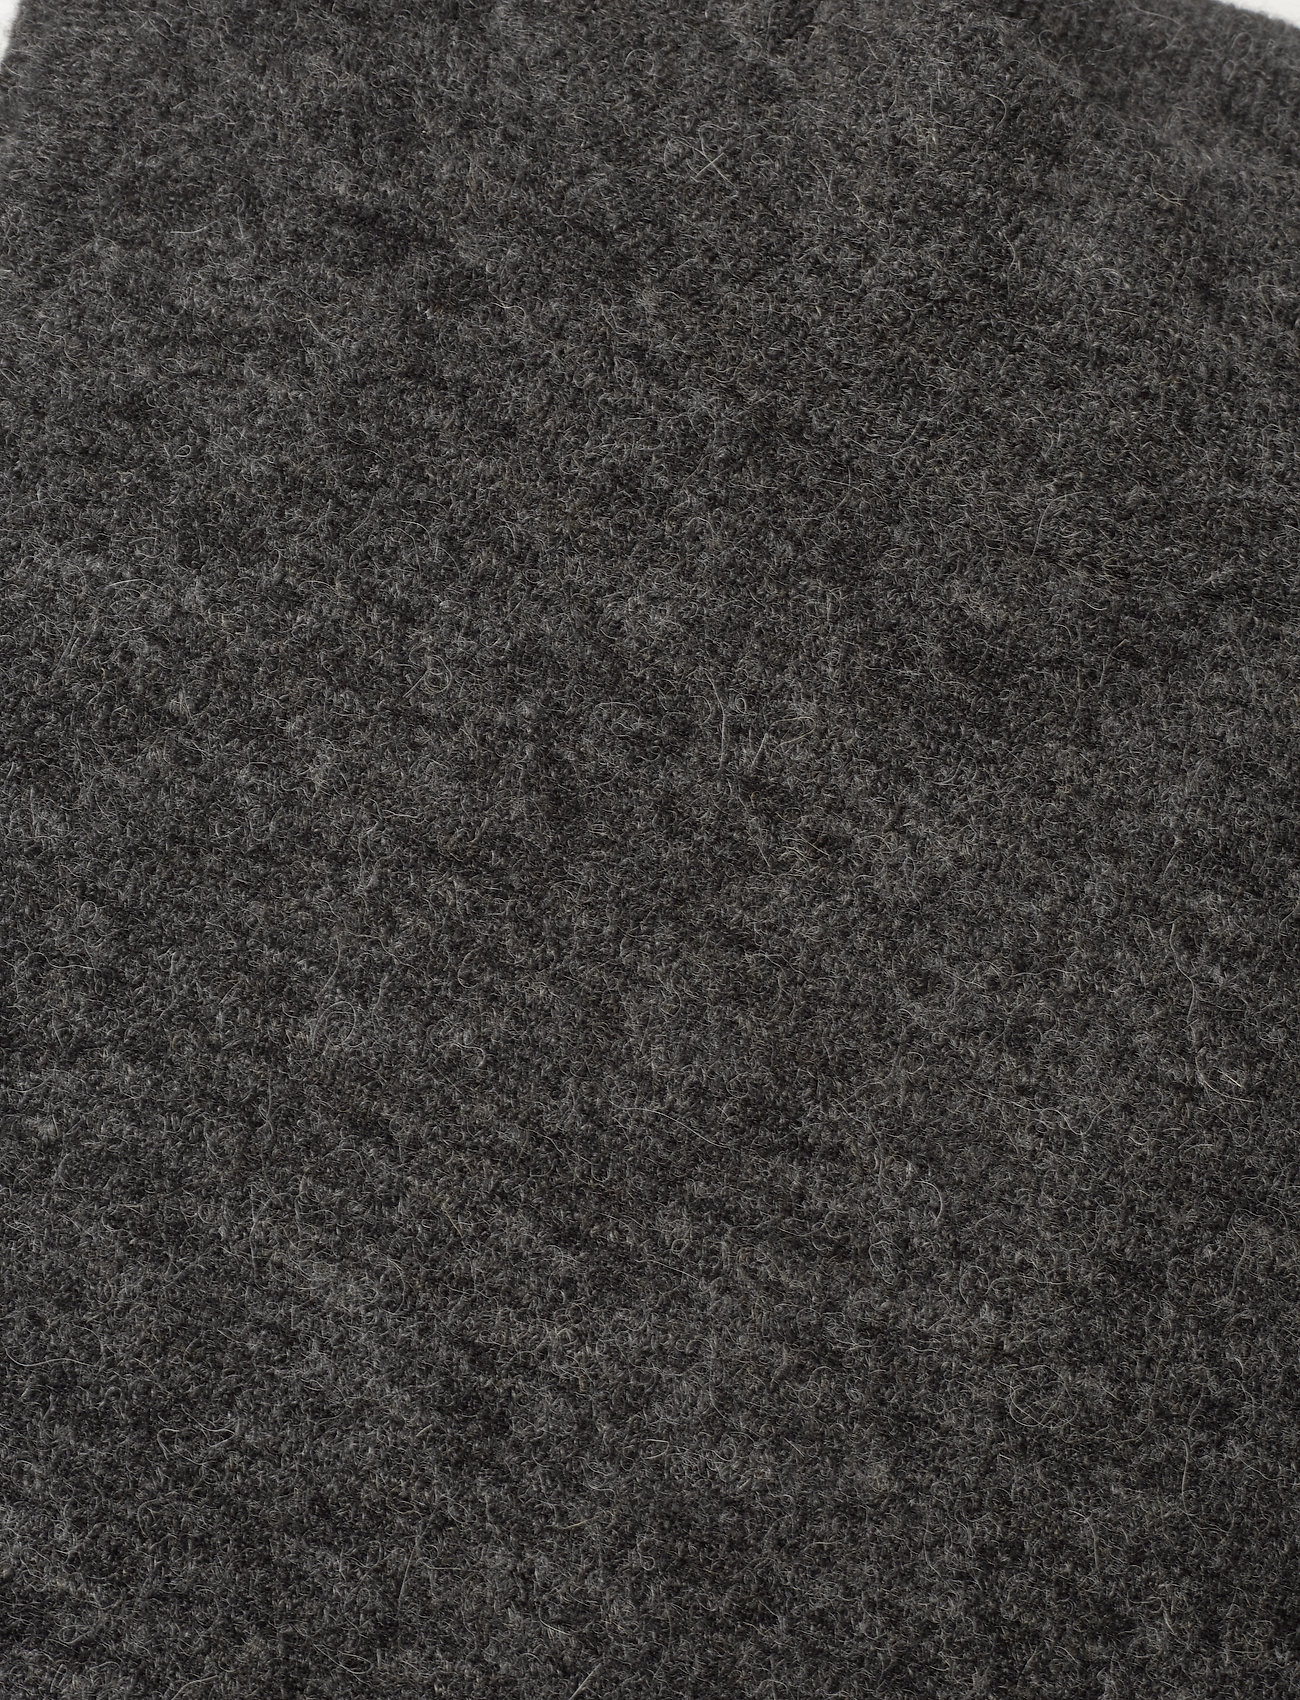 Stylein - ELLI SWEATER - knitted vests - dark grey - 3